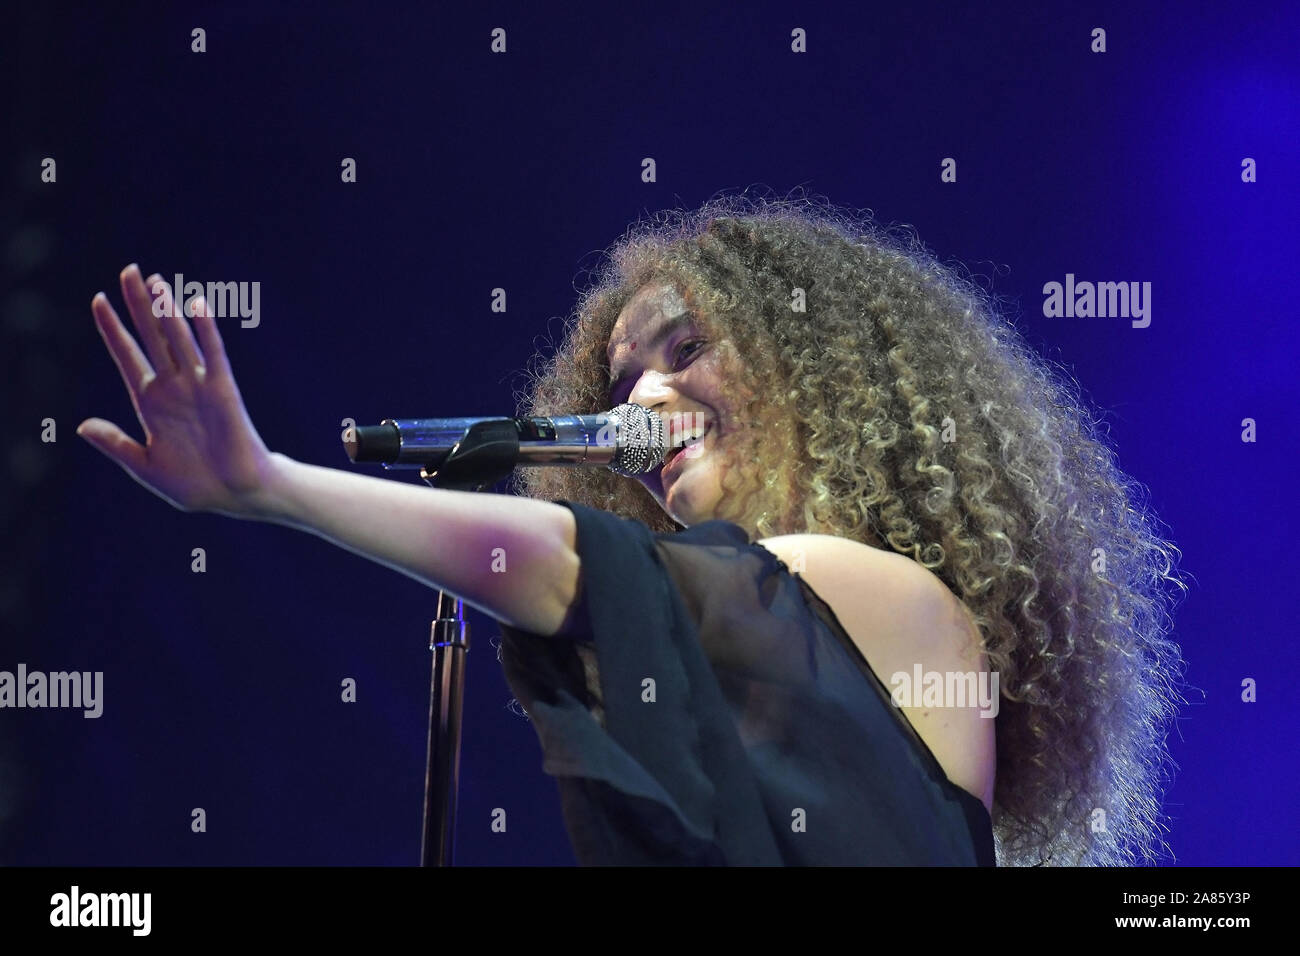 Rio de Janeiro, Brazil, October 5, 2019. Singer Vitória Falcão of the musical duo Anavitória during a show at Rock in Rio 2019 in Rio de Janeiro. Stock Photo